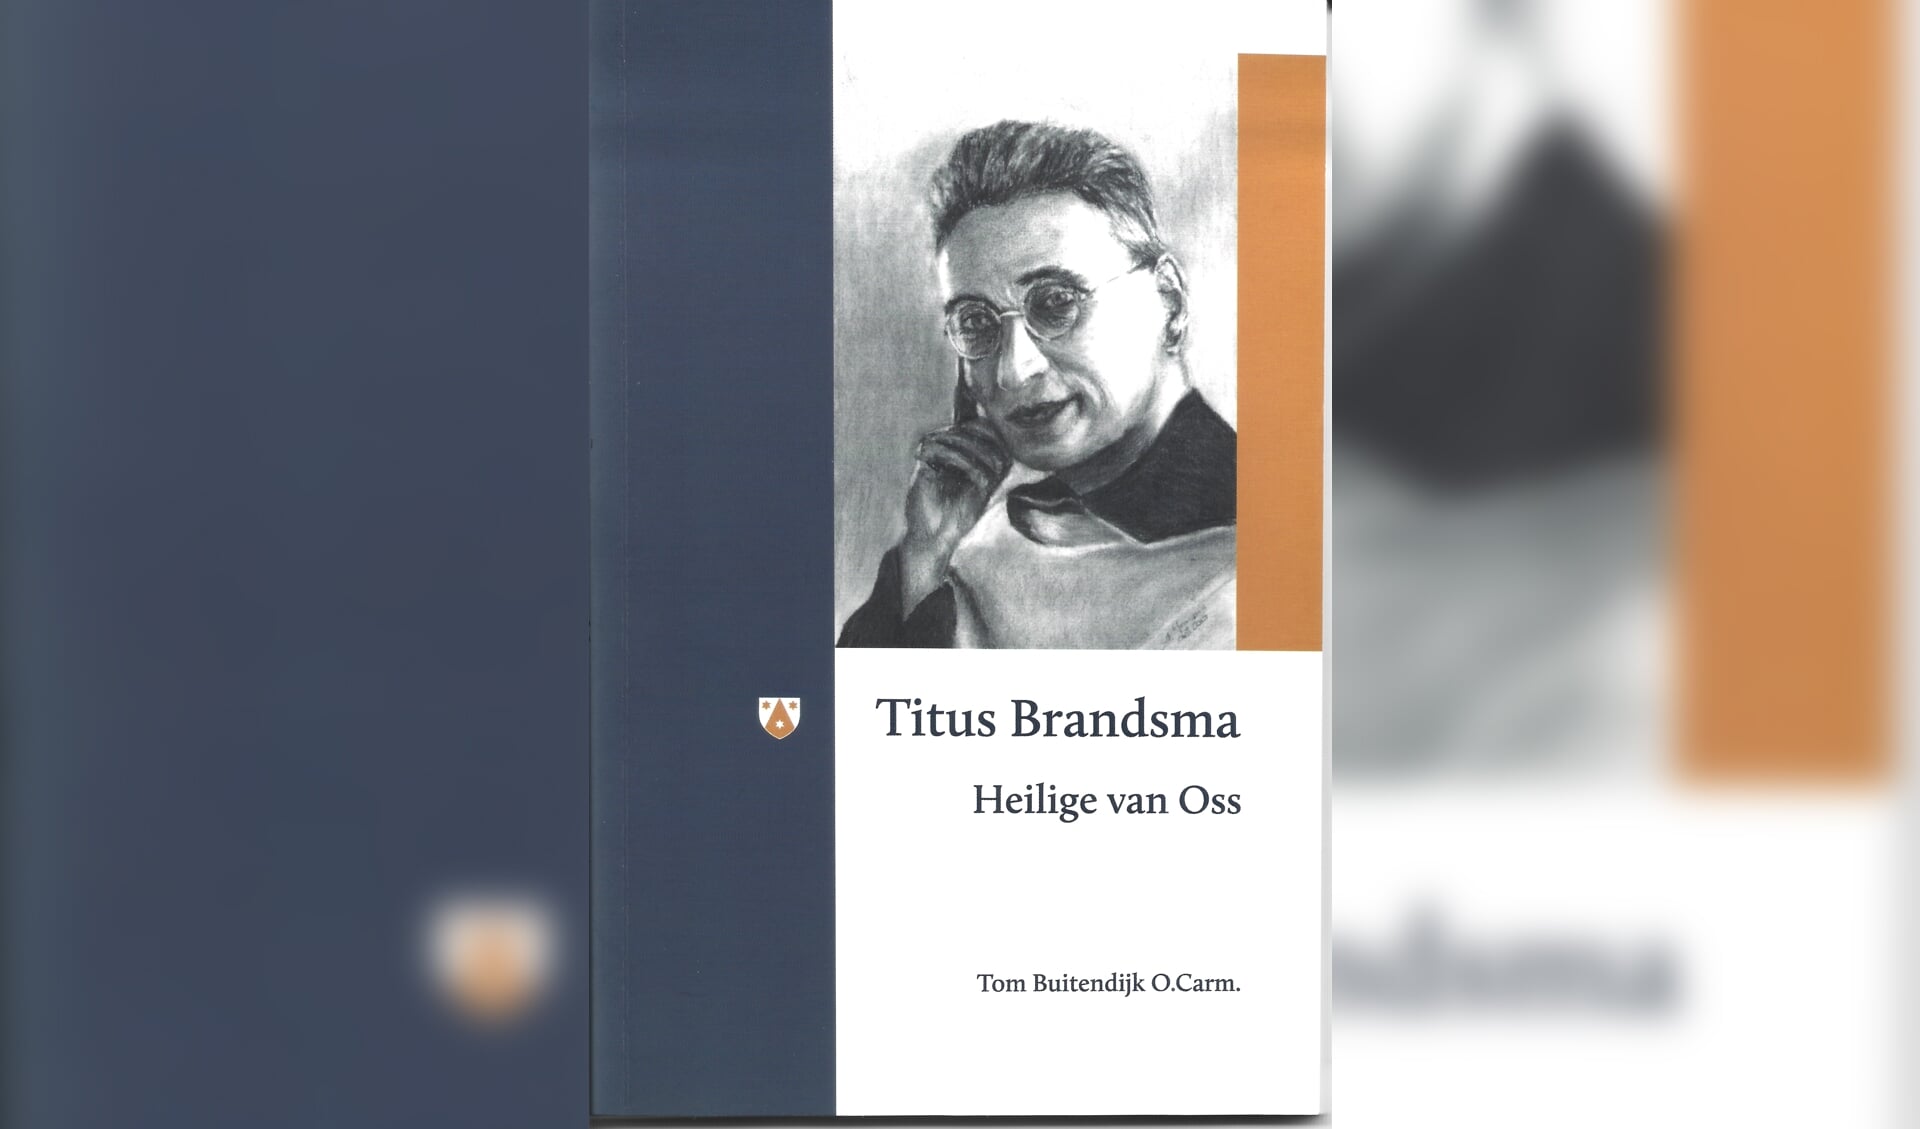 Boek over Titus Brandsma nu verkrijgbaar.